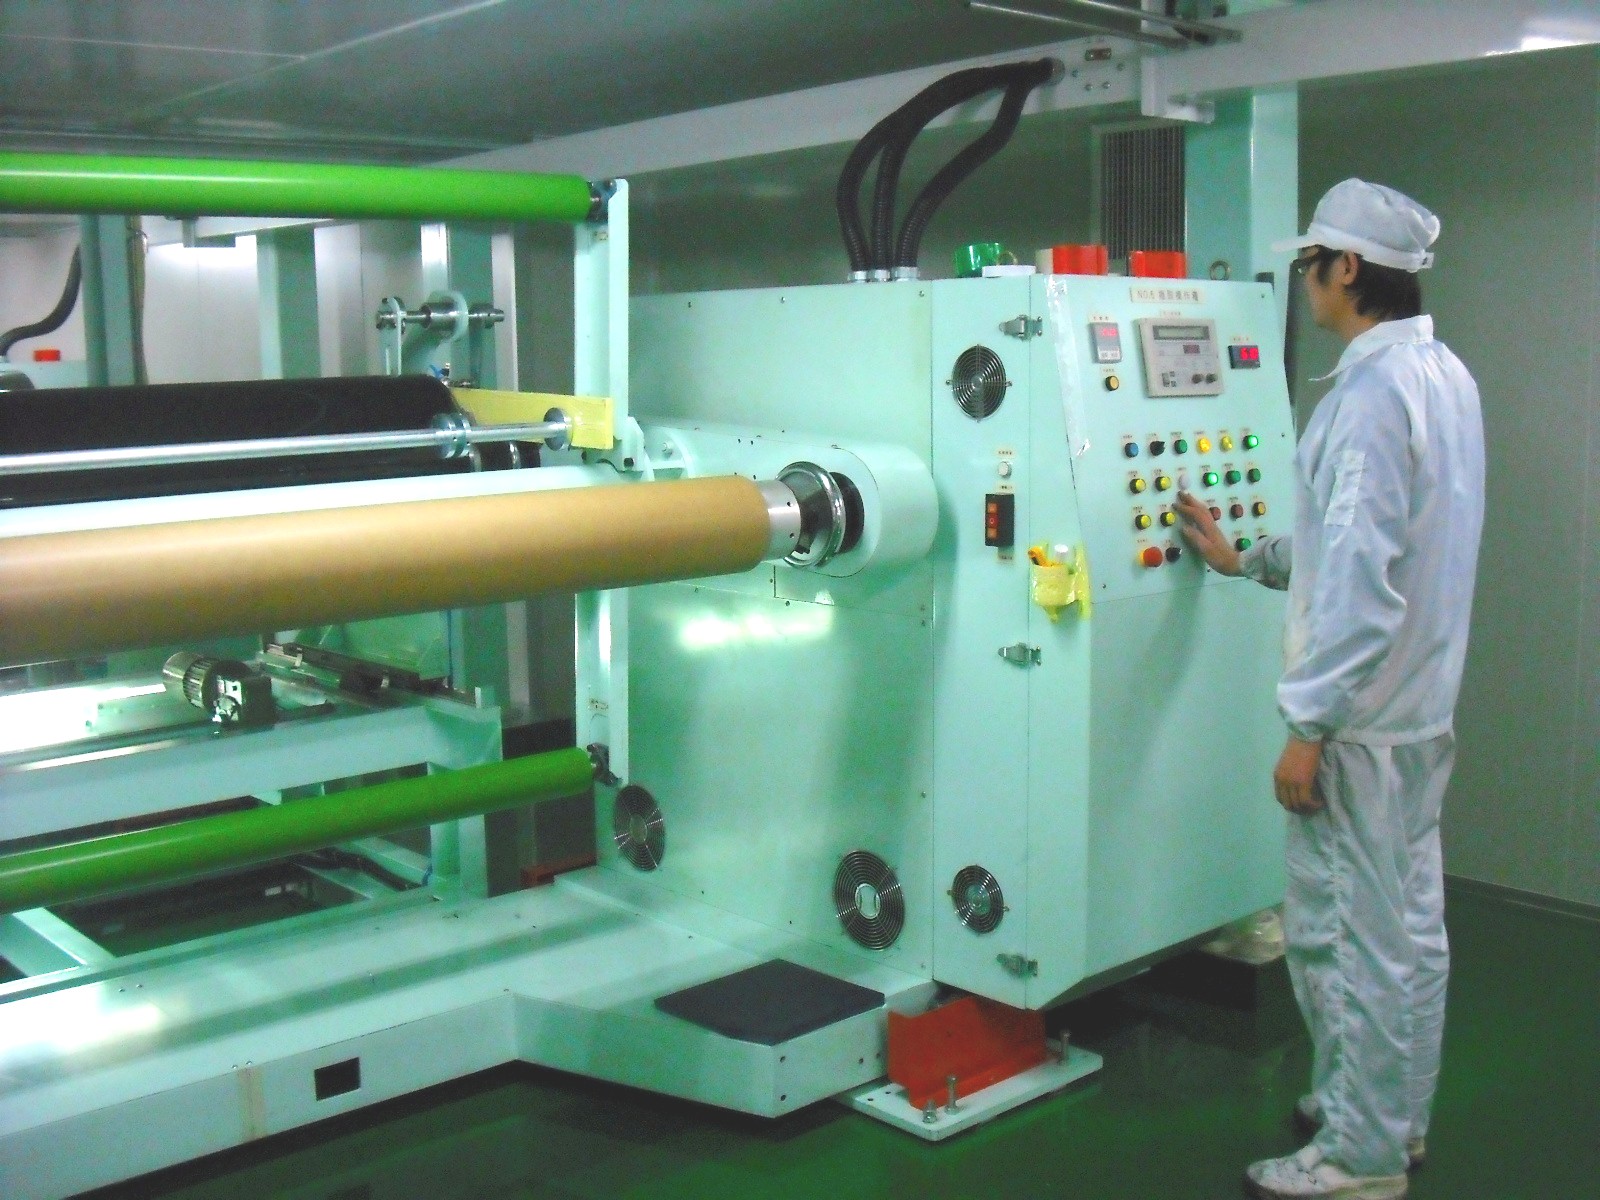 Temos experiência na fabricação
Película para vidros, fábricas localizadas em Taiwan com novos equipamentos atualizados.